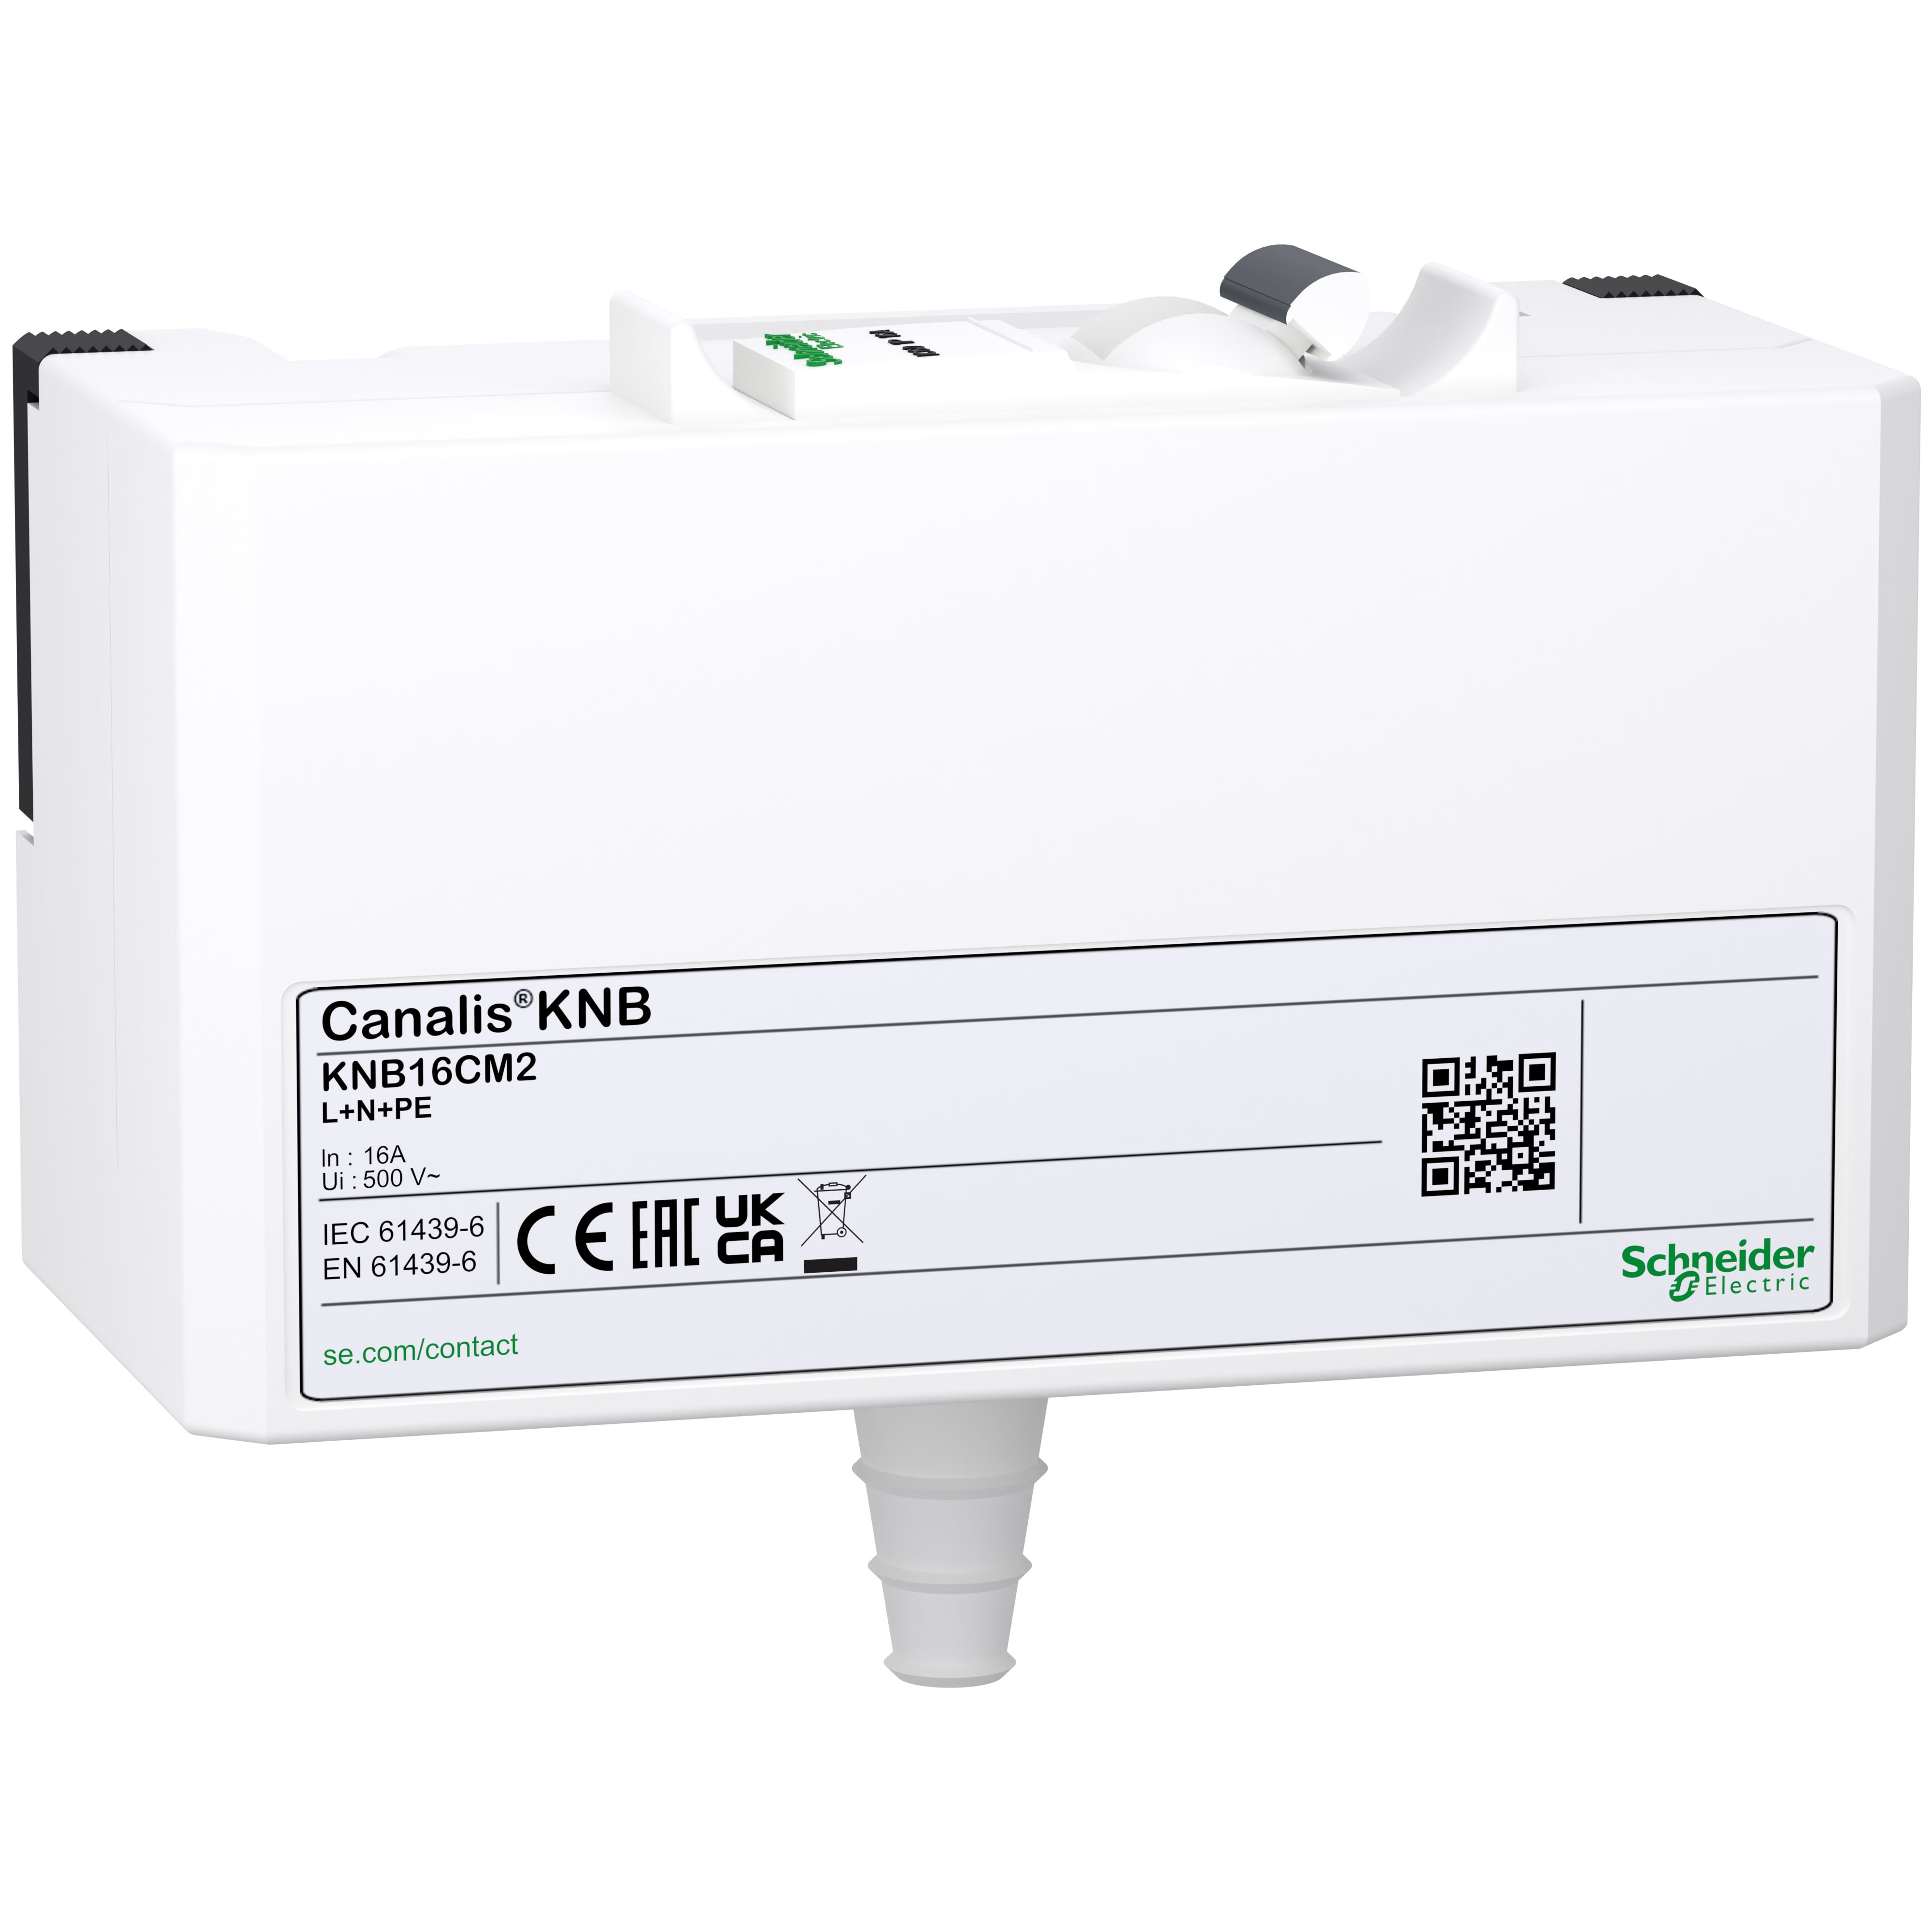 Schneider Electric - Canalis KNA & KNT - connecteur derivat. C60N - Select. Ph-16 A - 1L+N+PE - IP41